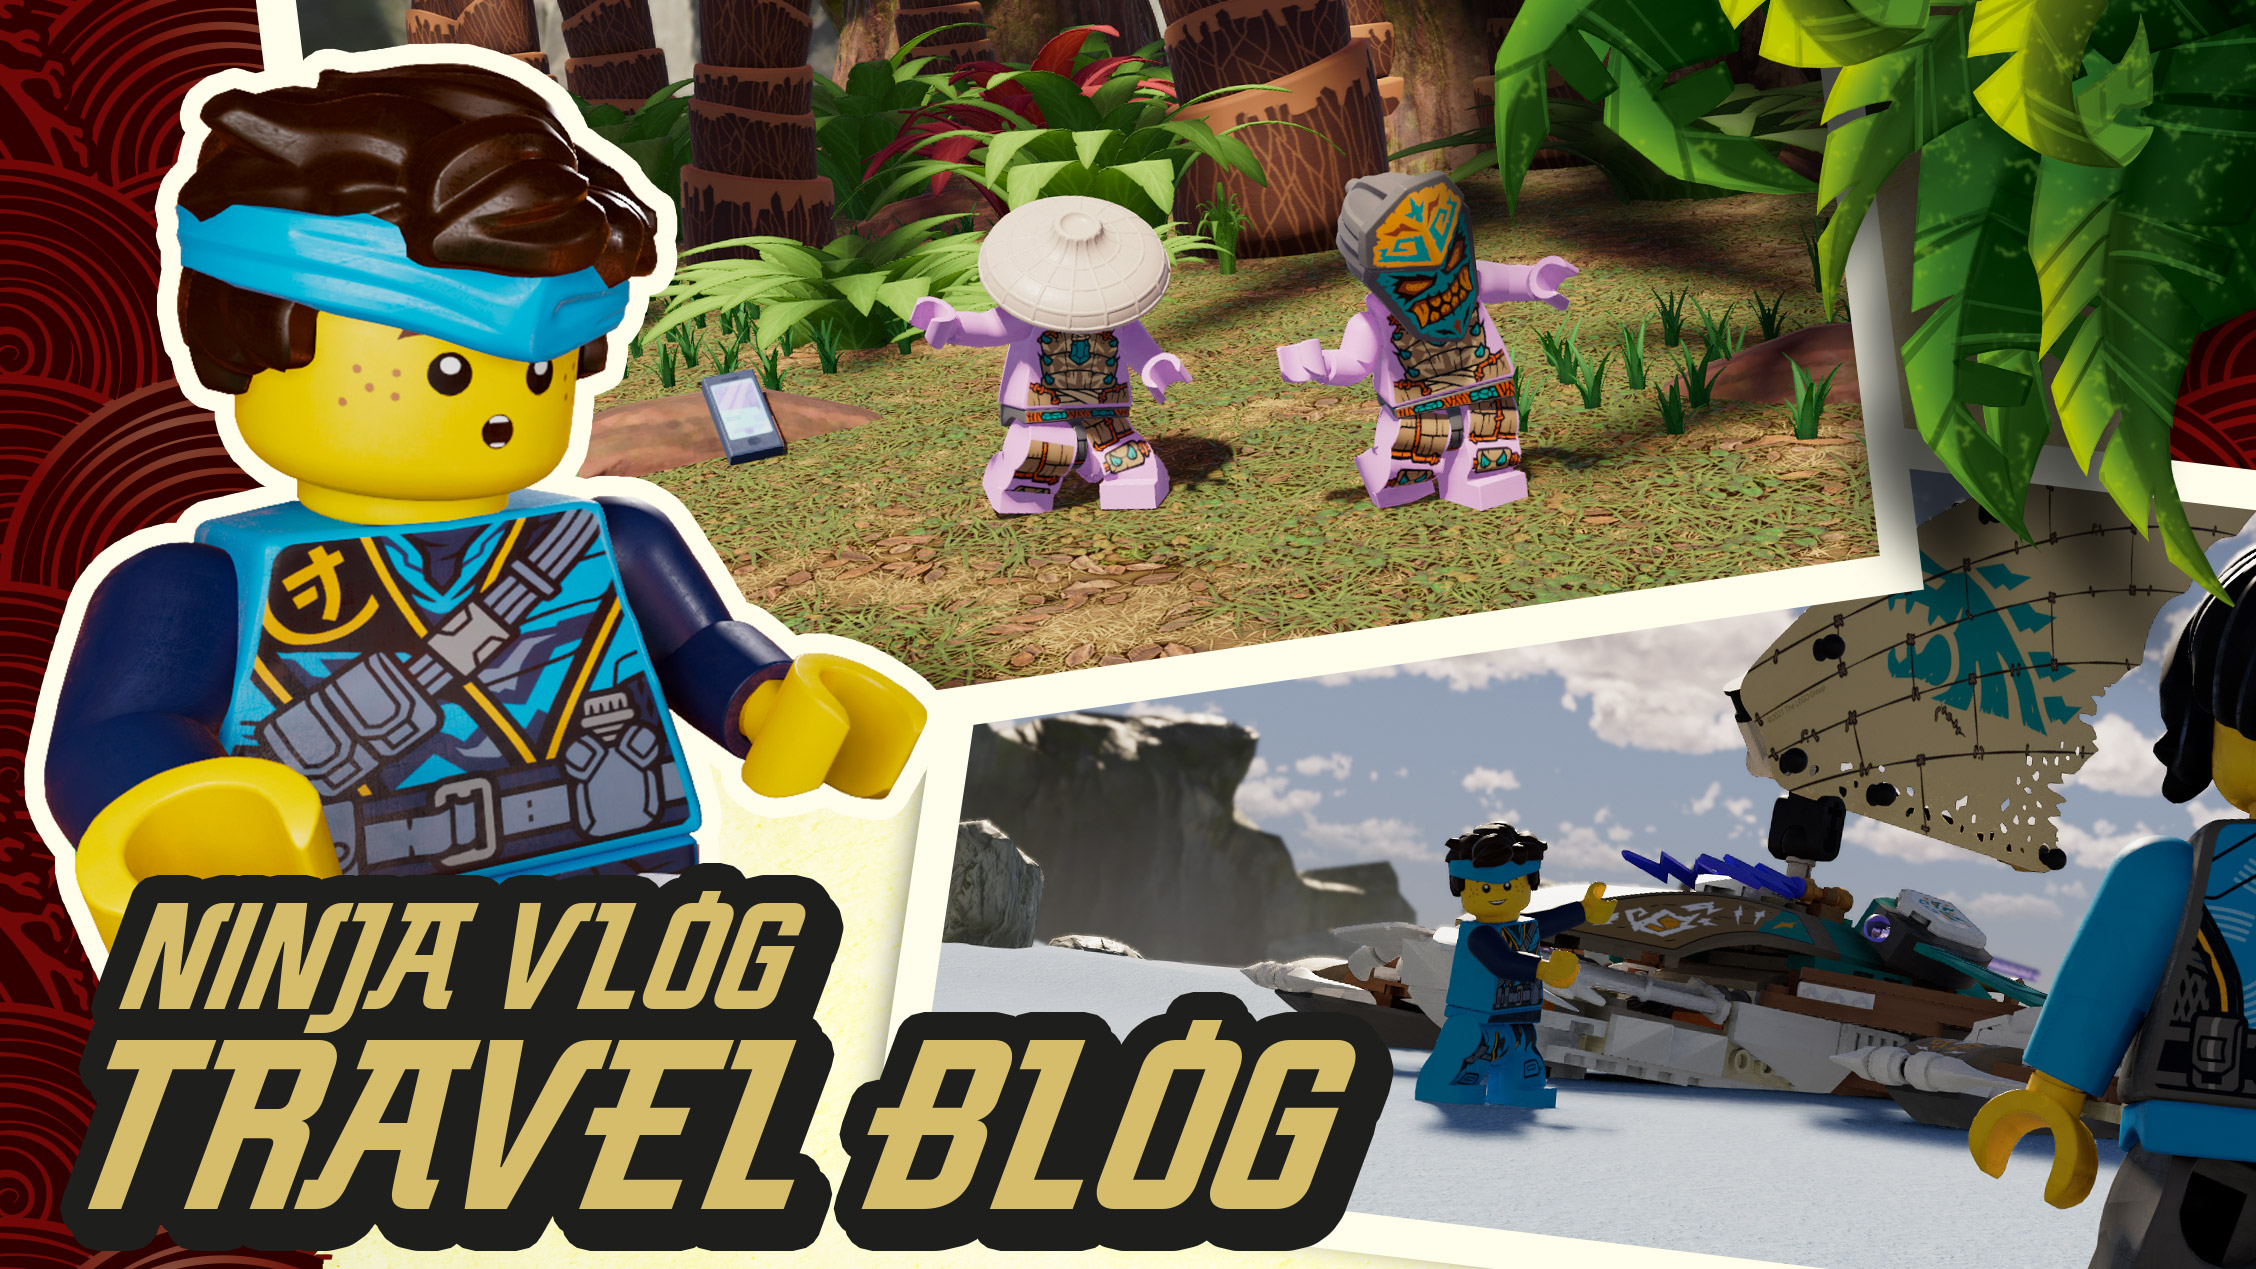 falskhed impressionisme helbrede Jays rejseblog: Øen - LEGO.com for børn